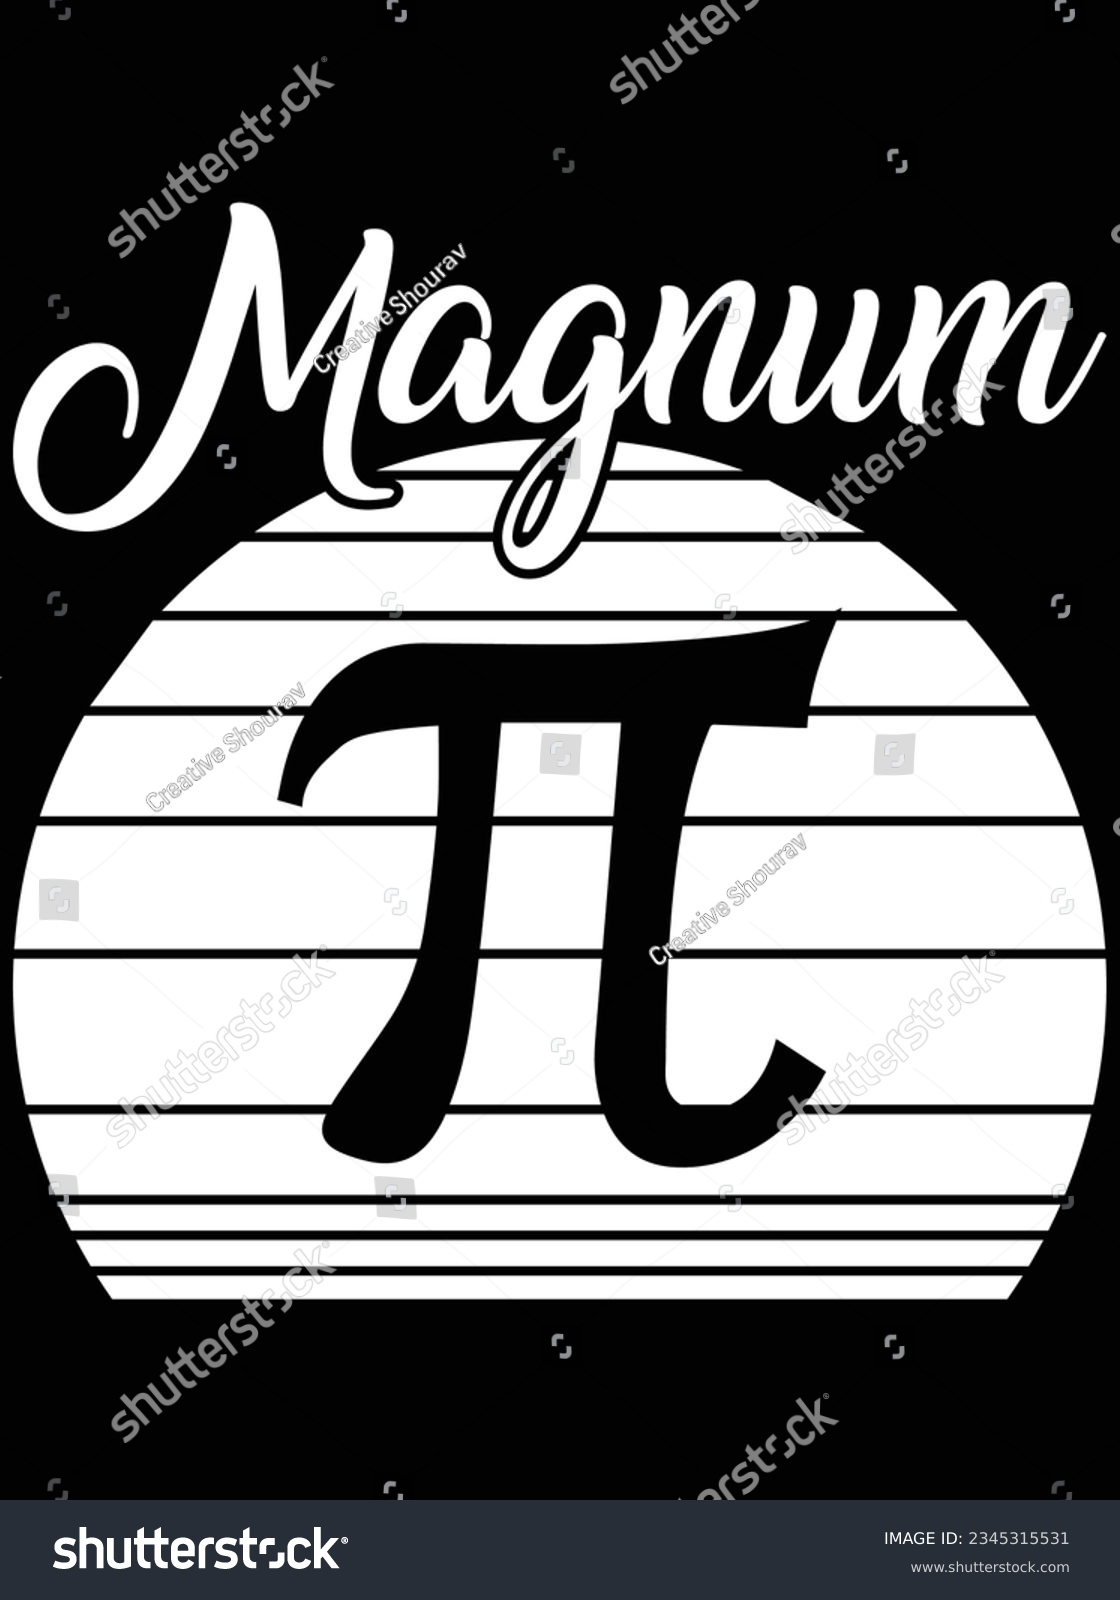 SVG of Magnum pi vector art design, eps file. design file for t-shirt. SVG, EPS cuttable design file svg